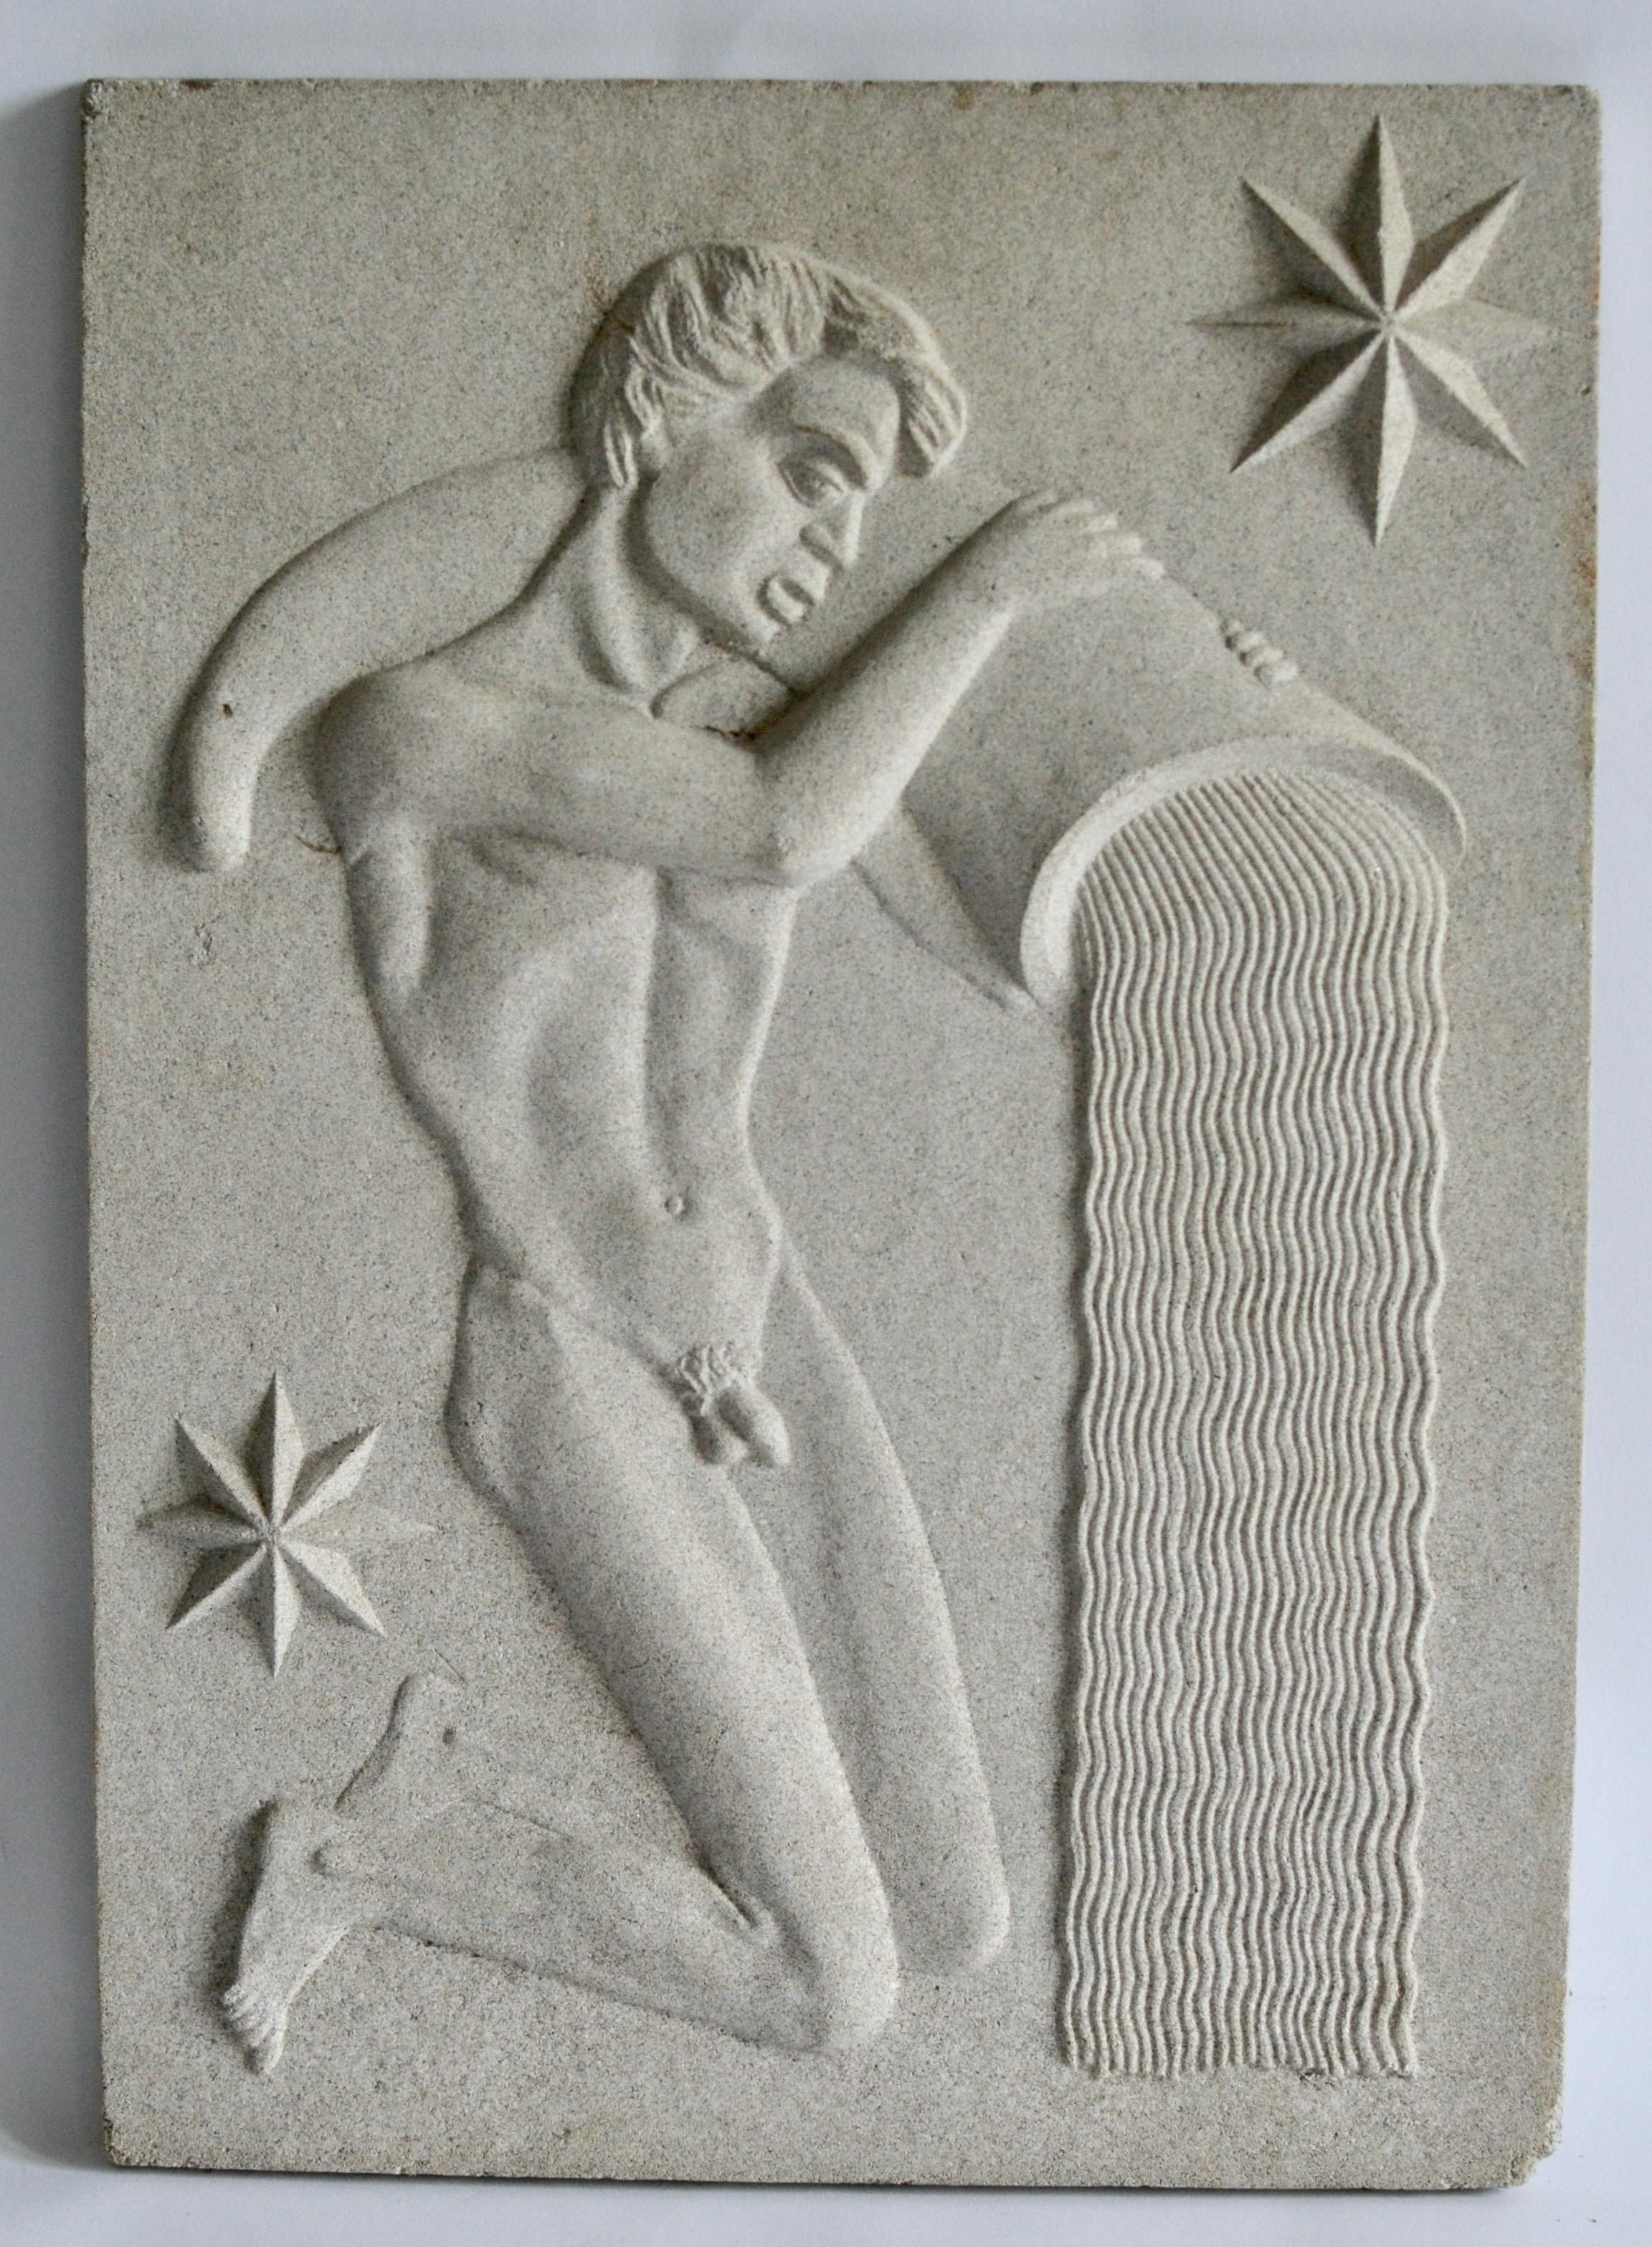 Swedish Zodiac Artificial Stone Relief Sign of Gemini, c. 1940